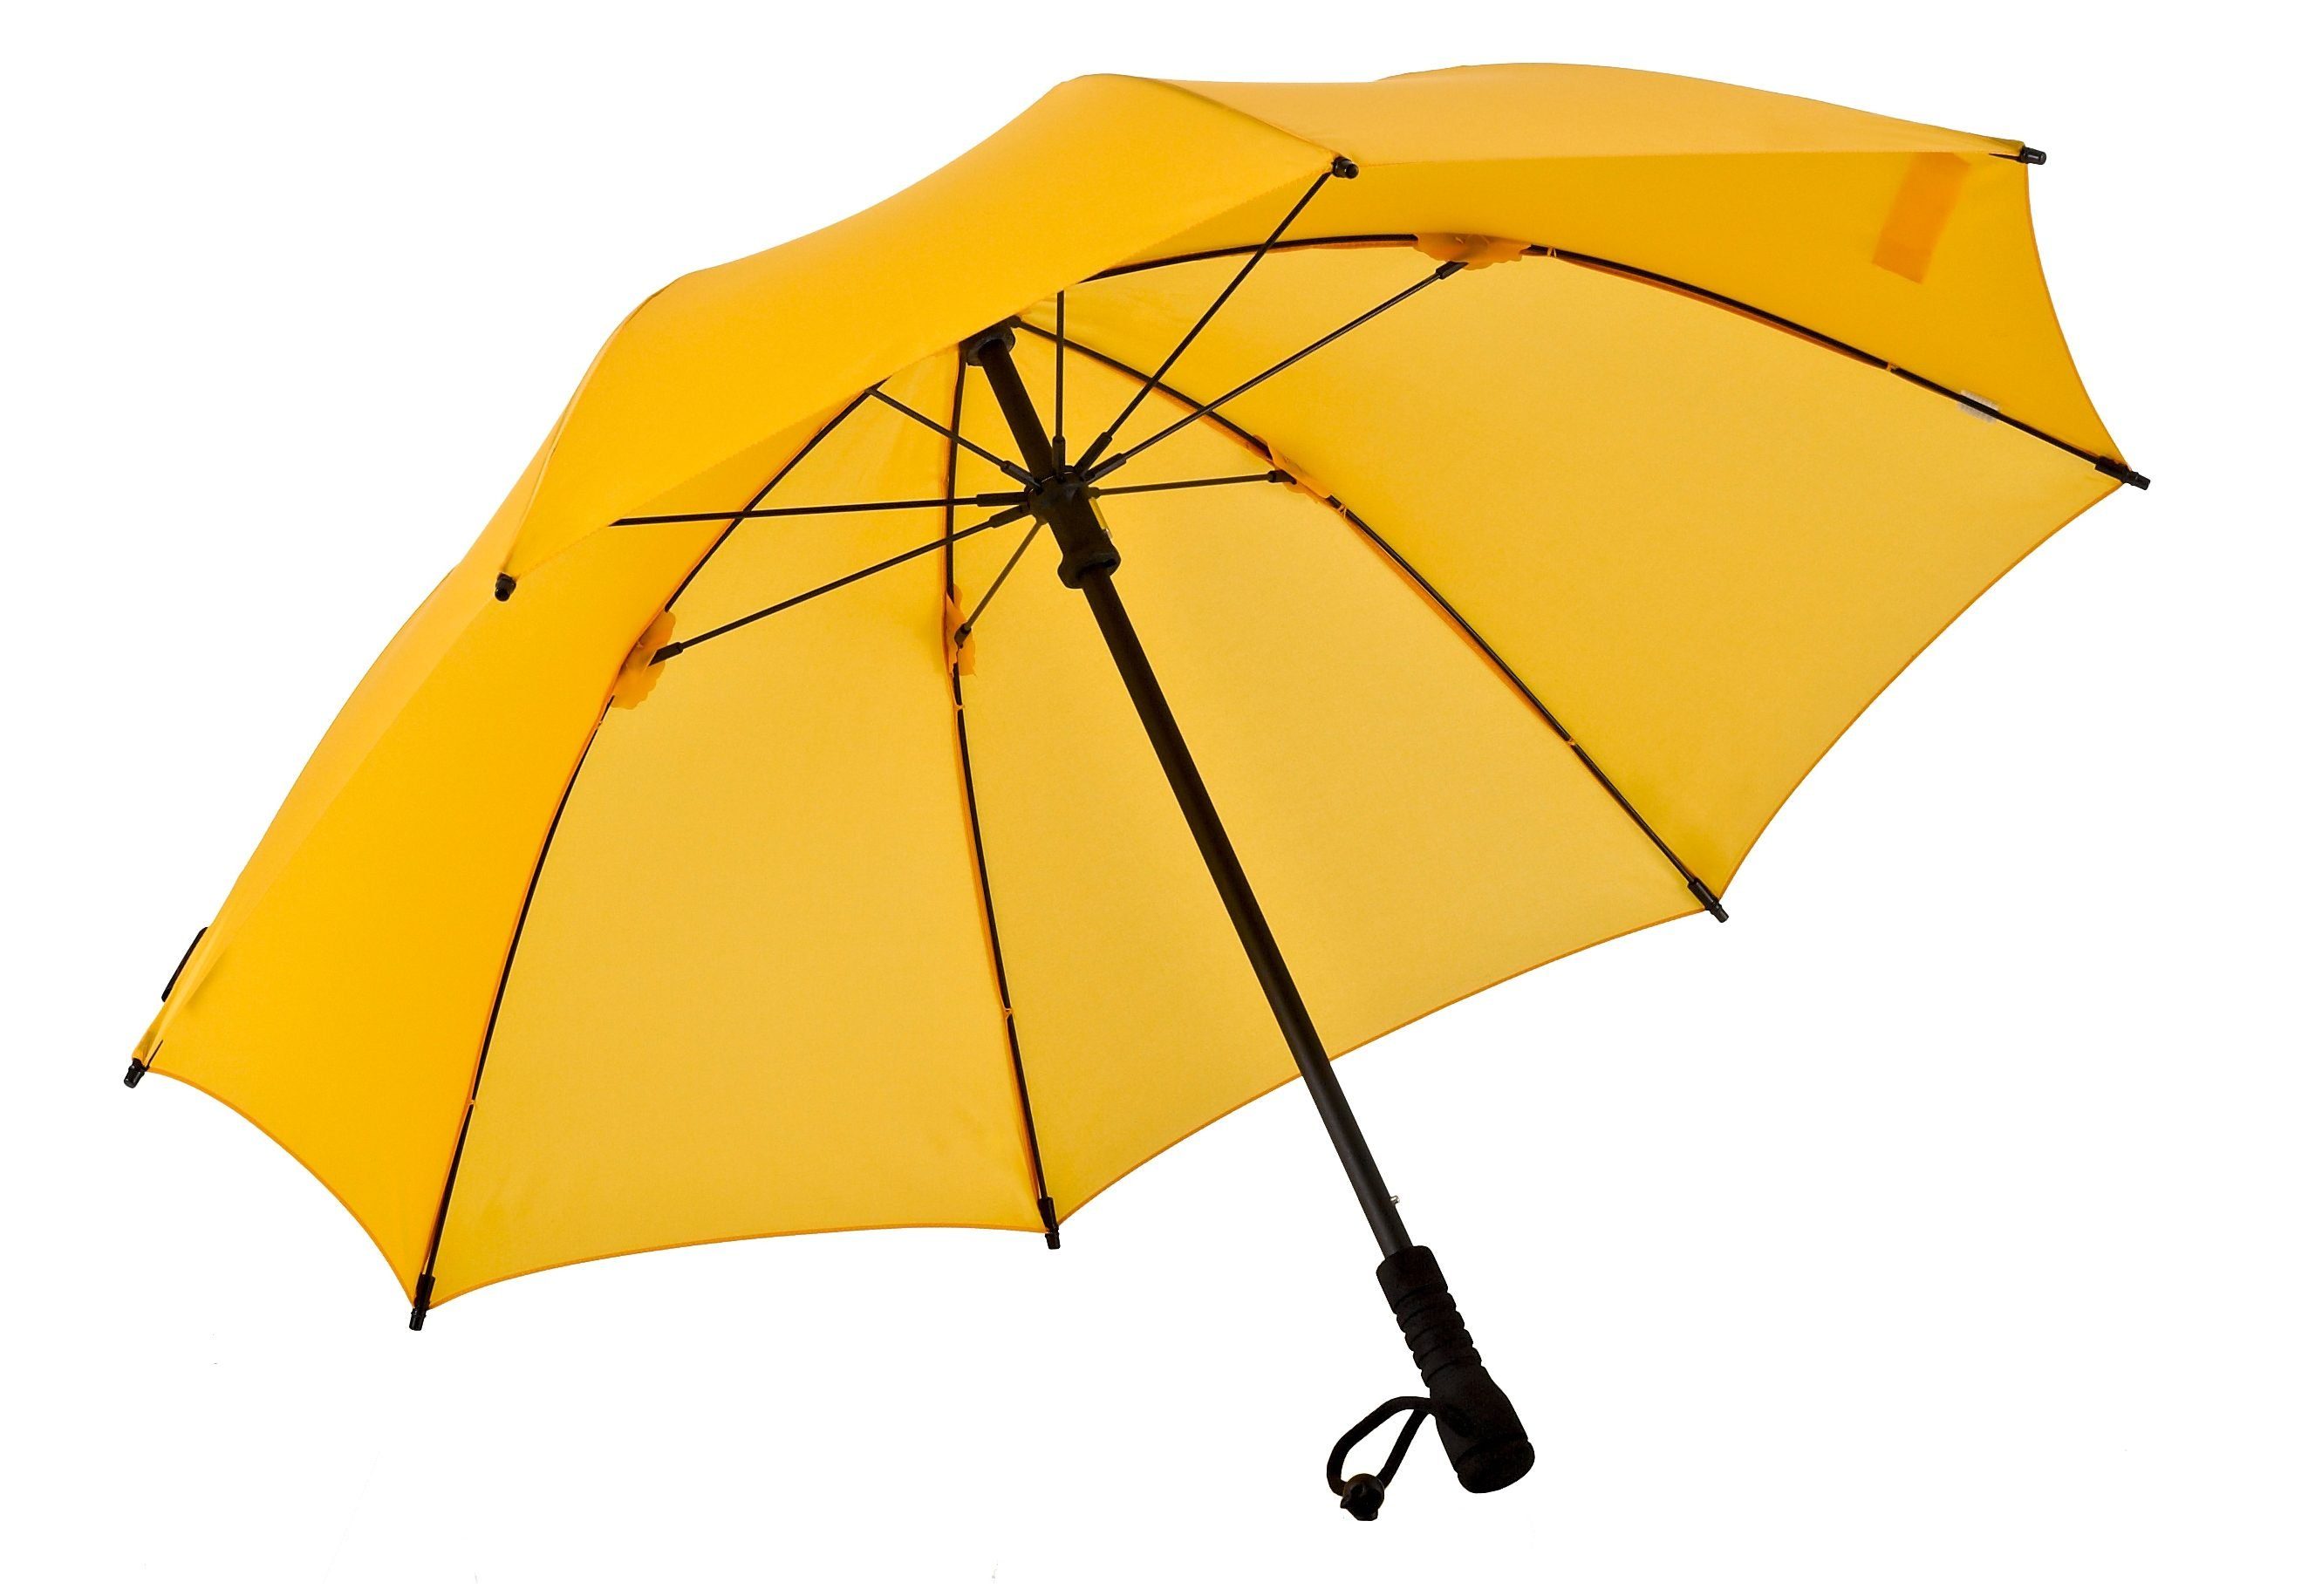 Stockregenschirm Swing gelb EuroSCHIRM®